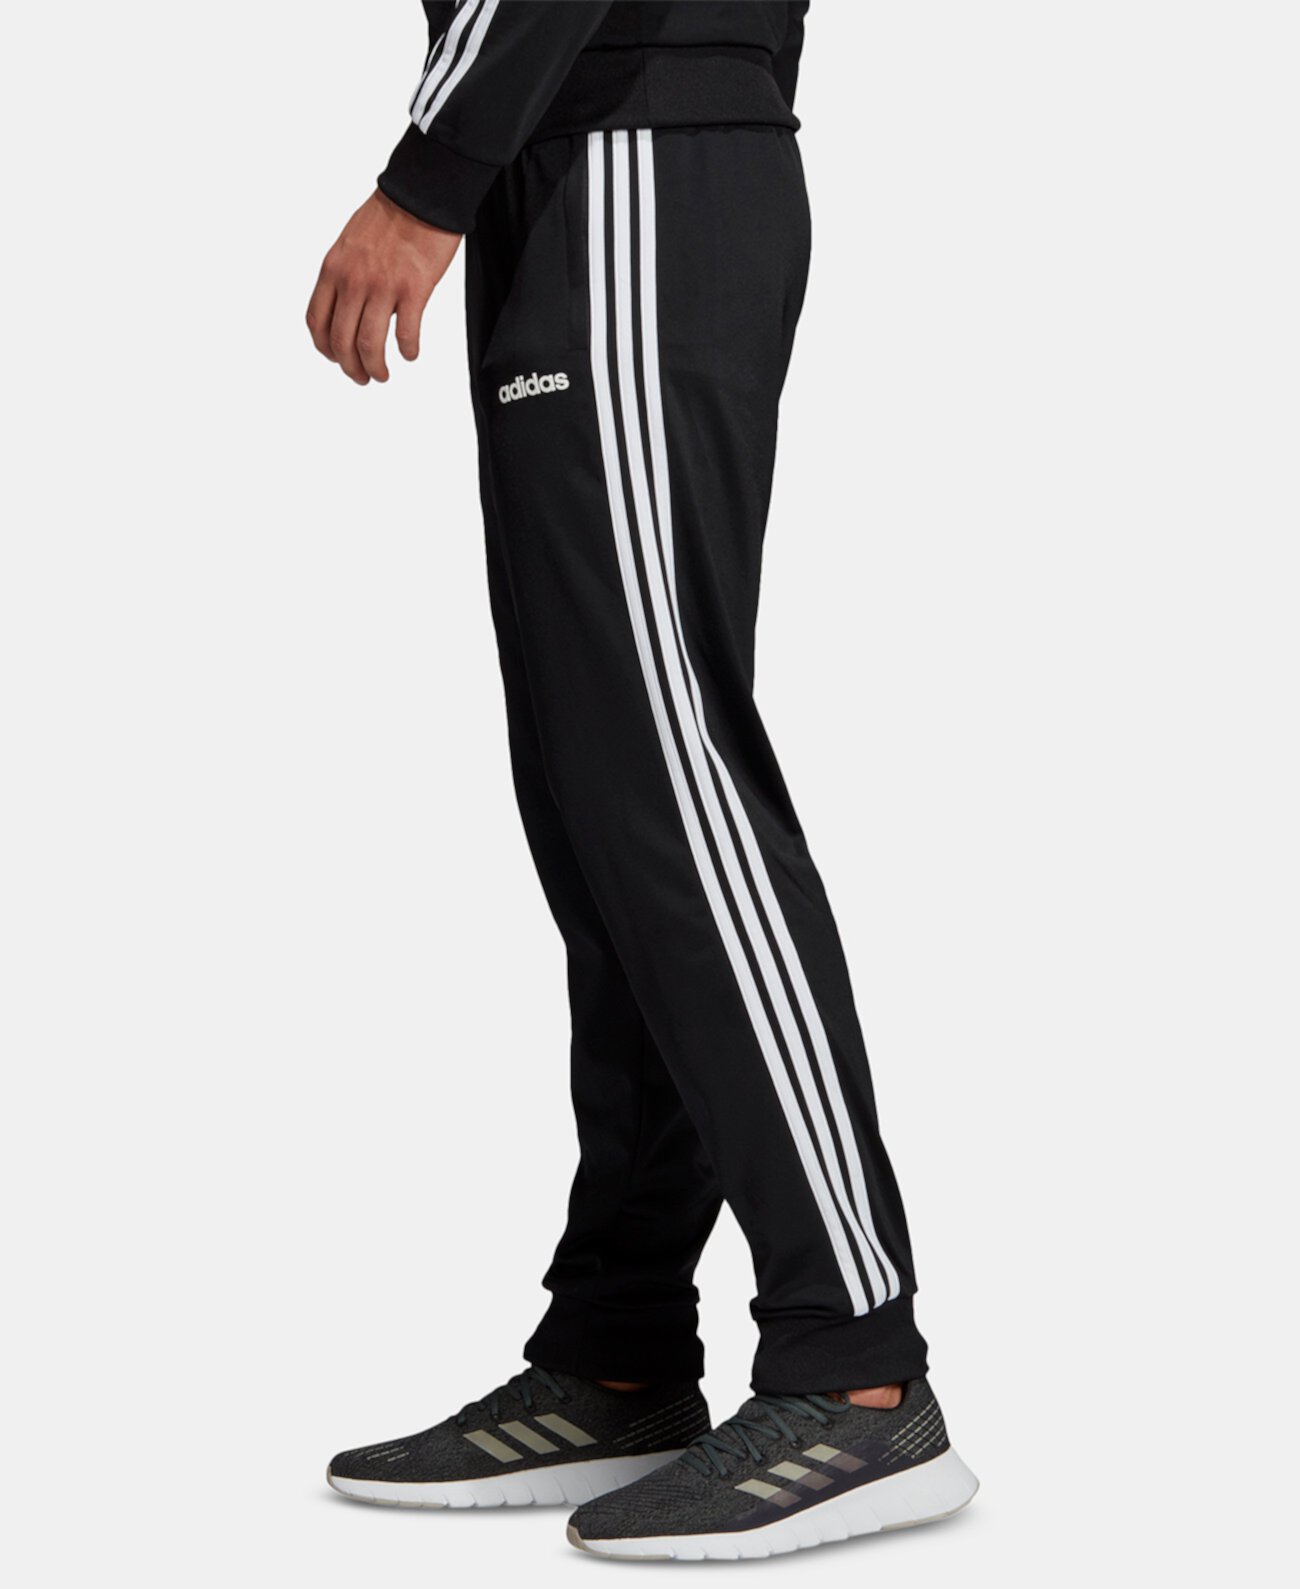 Зауженные трикотажные брюки с 3 полосками для мужчин Essentials Adidas